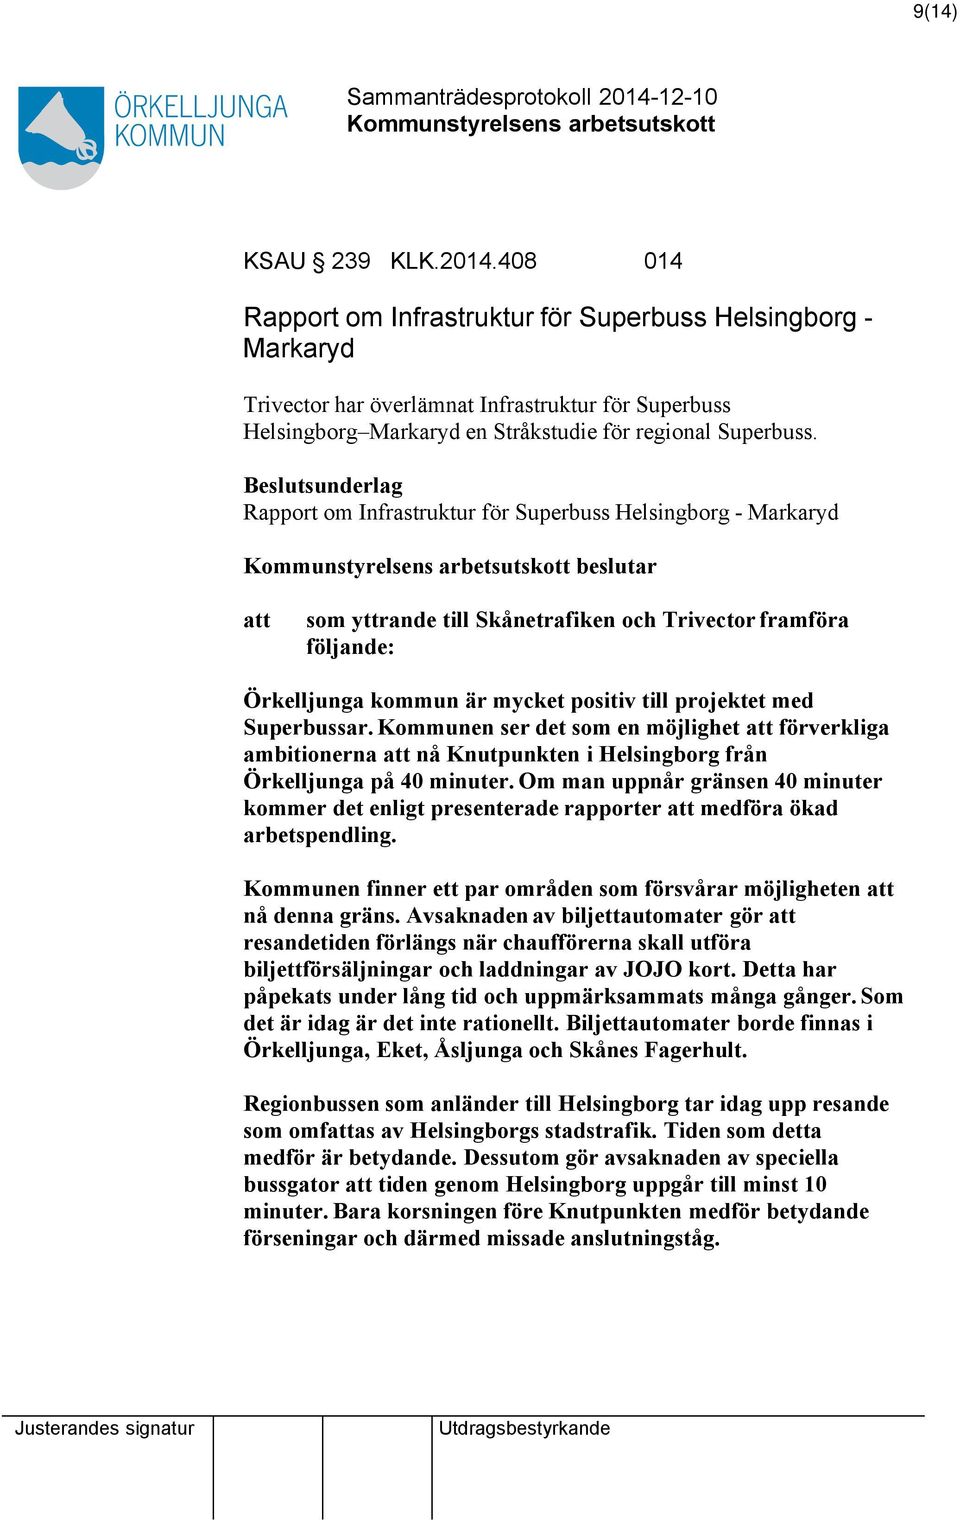 Beslutsunderlag Rapport om Infrastruktur för Superbuss Helsingborg - Markaryd beslutar att som yttrande till Skånetrafiken och Trivector framföra följande: Örkelljunga kommun är mycket positiv till